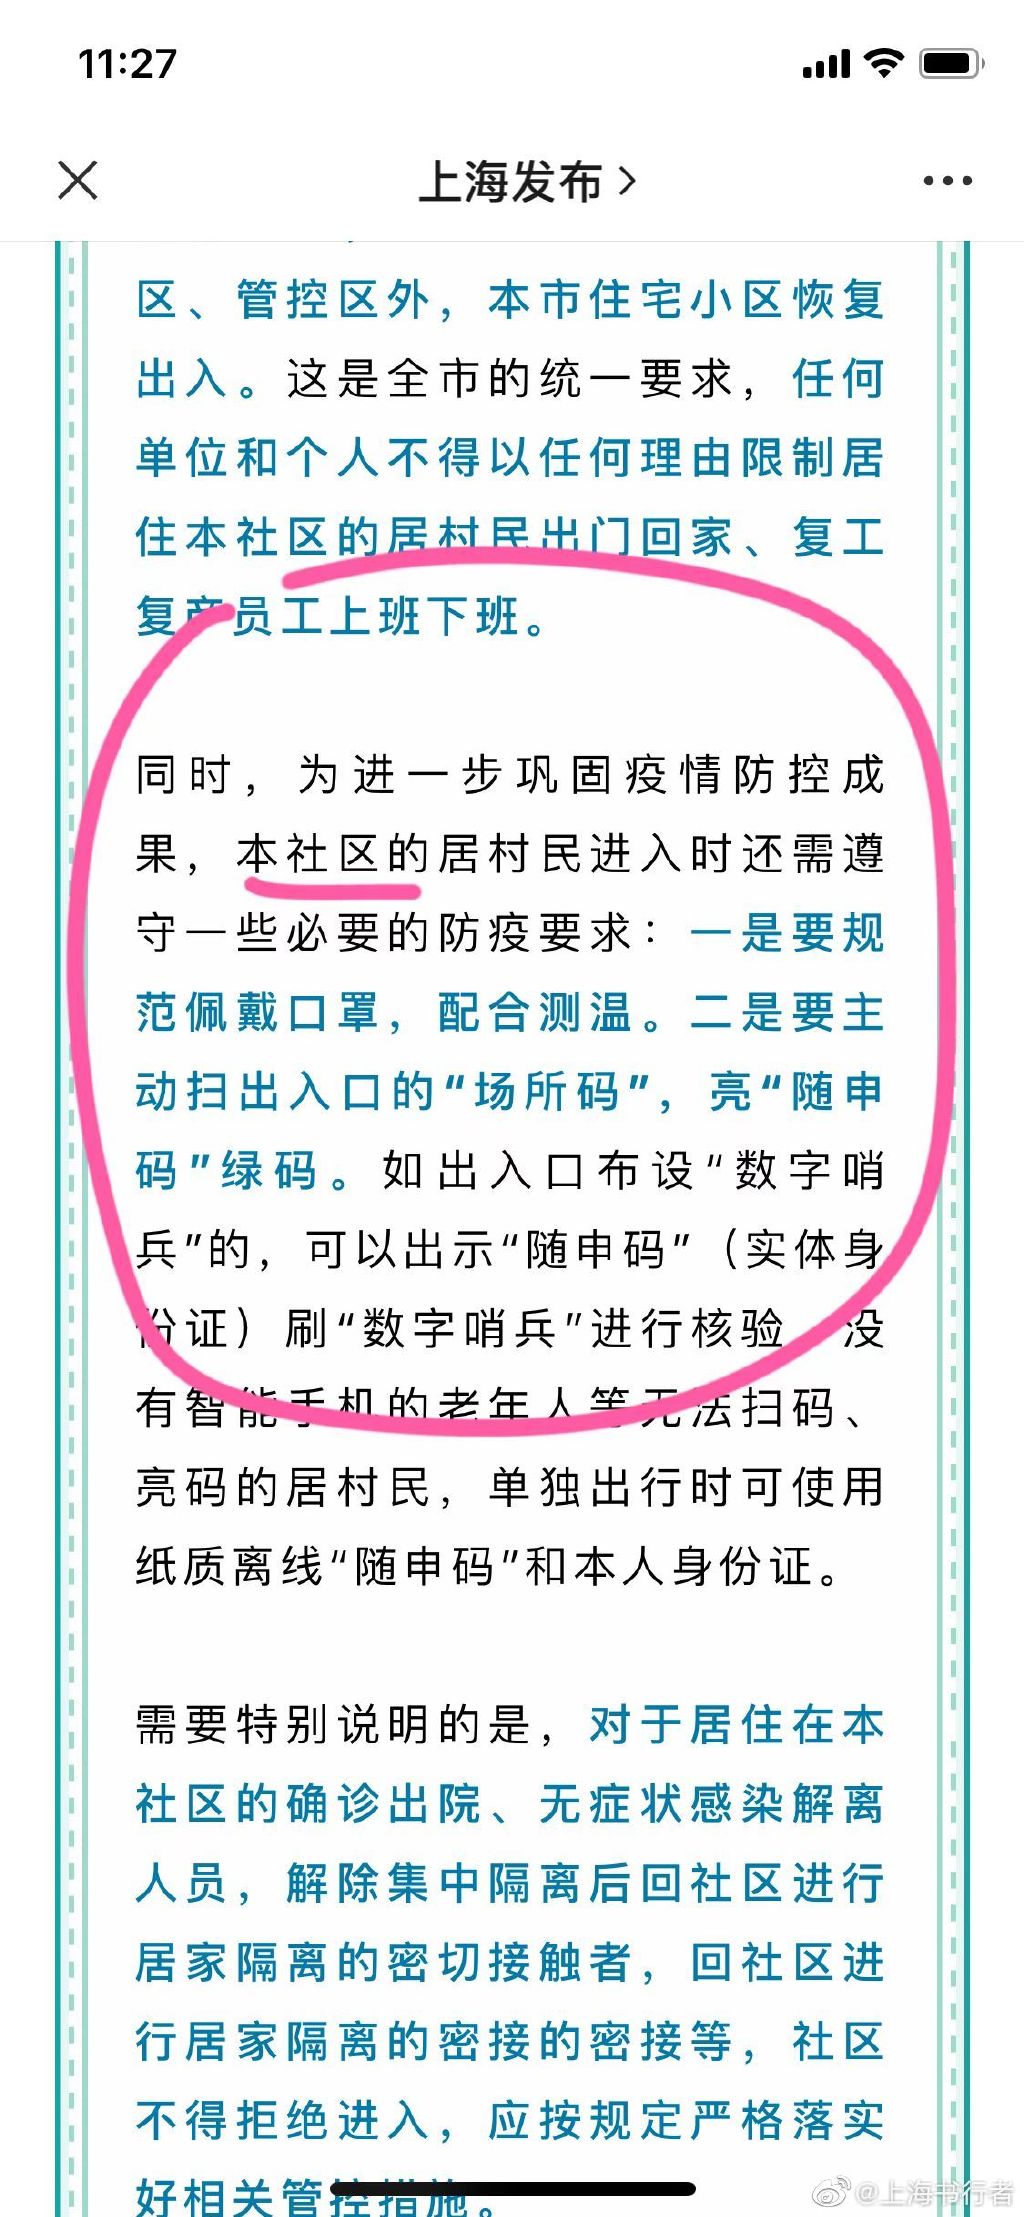 上海發布通知中也沒有提及本社區居民出入小區需要72小時核酸檢測。（網絡截圖）